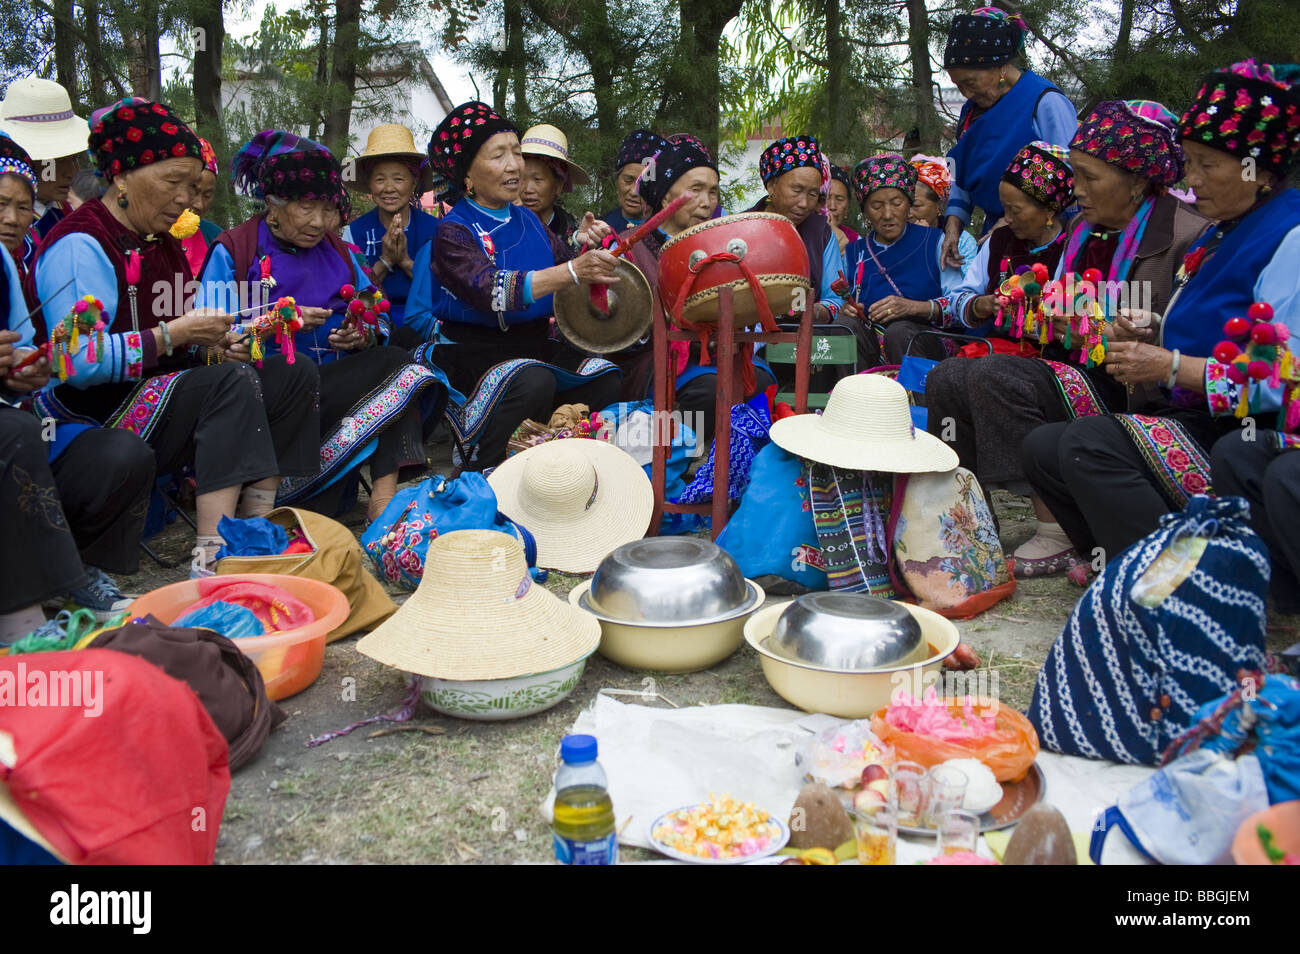 Worshippers at the Bai Raosanling Festival, Dali, Yunnan Province, China Stock Photo